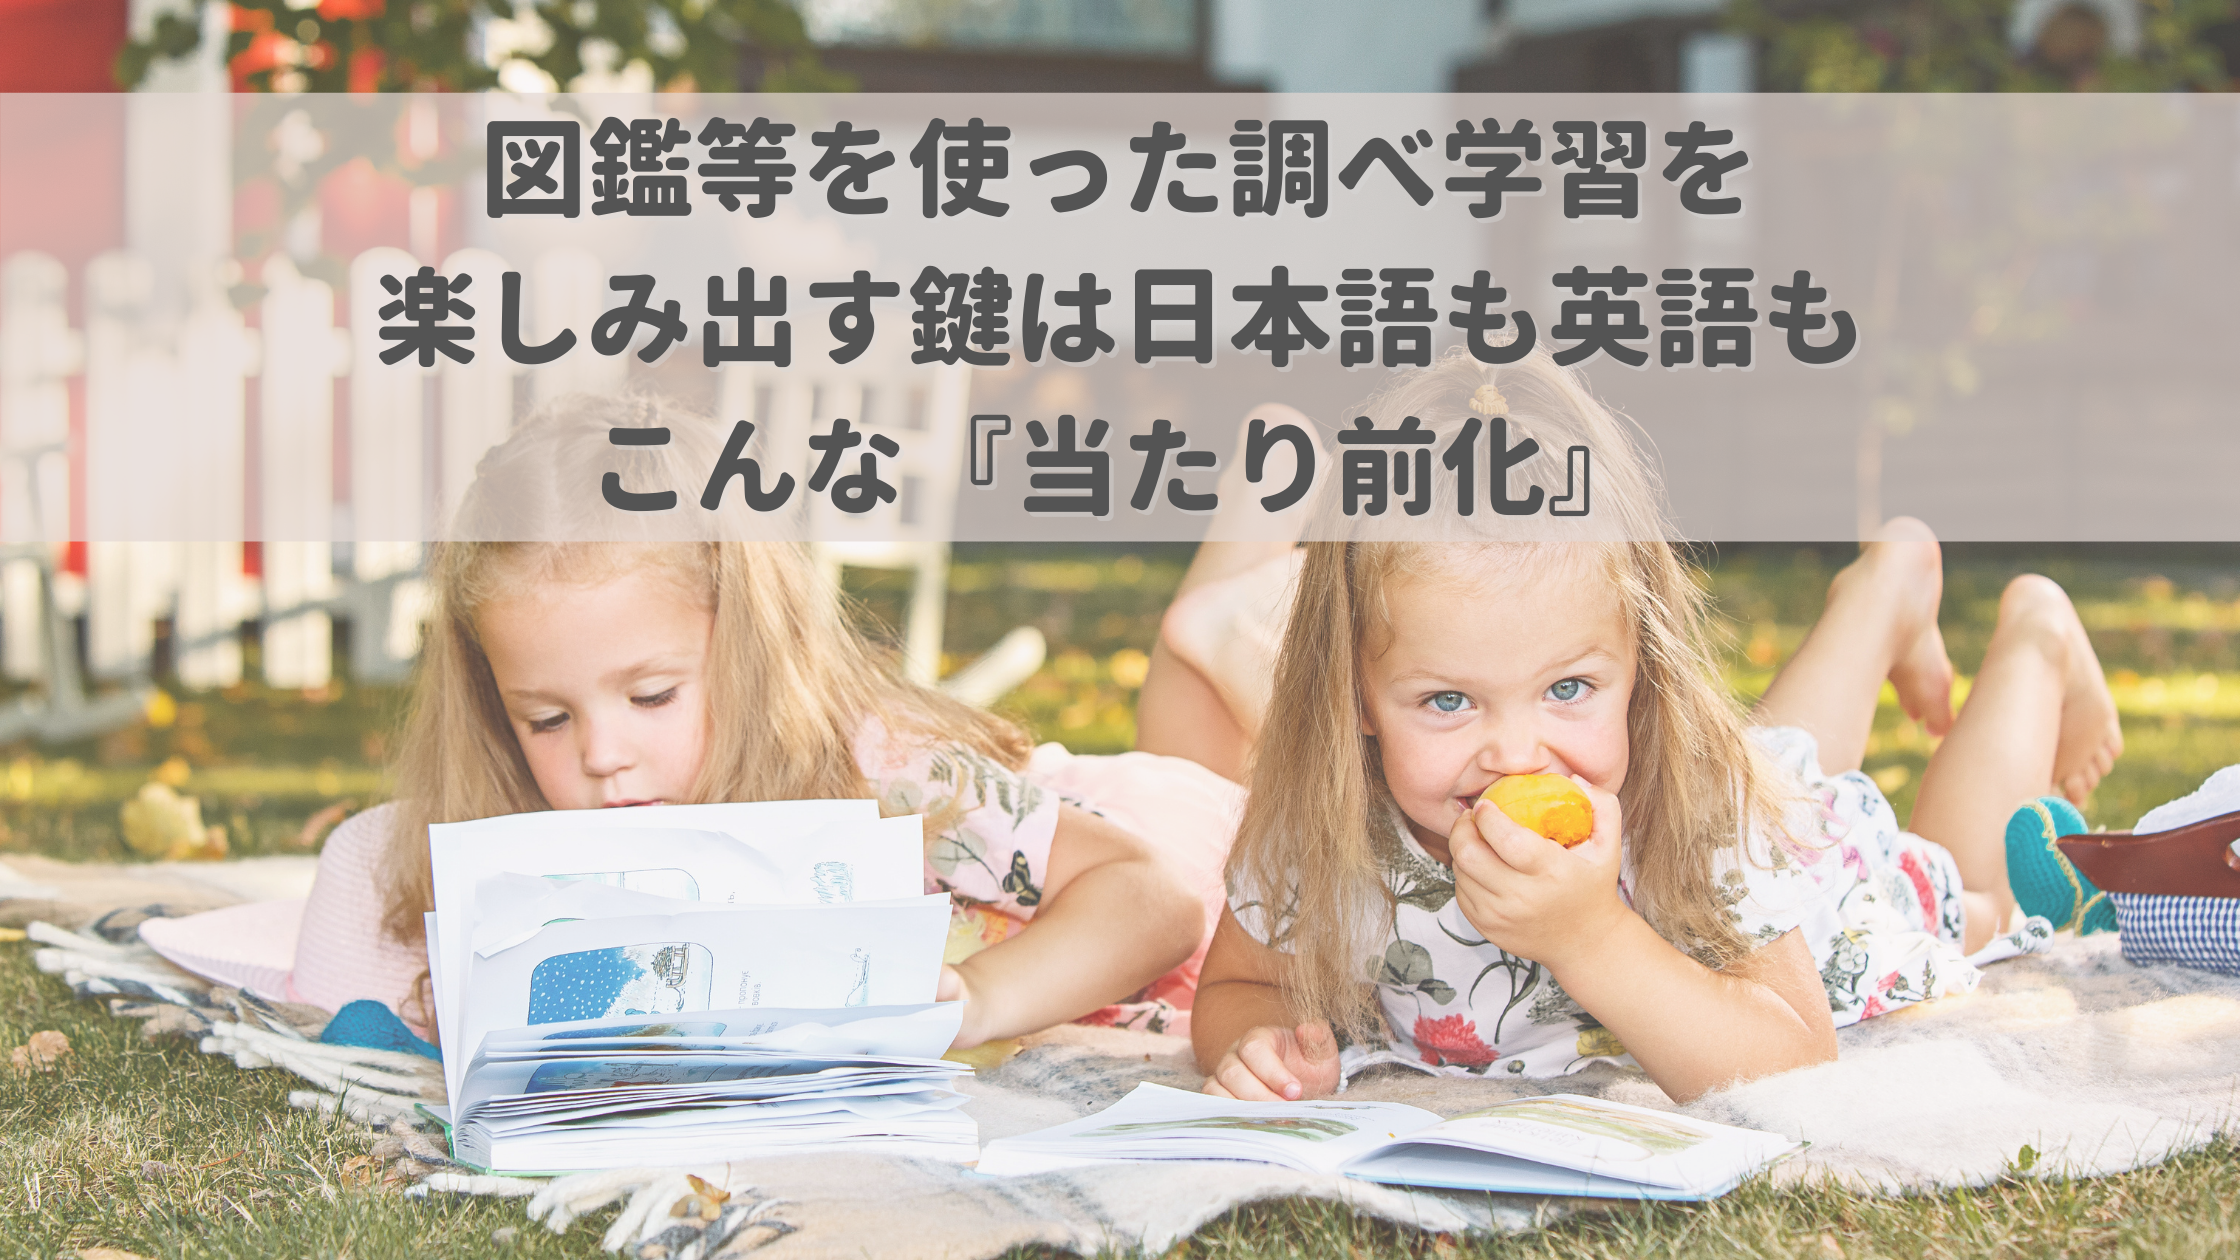 図鑑等を使った調べ学習を楽しみ出す鍵は日本語も英語もこんな『当たり前化』